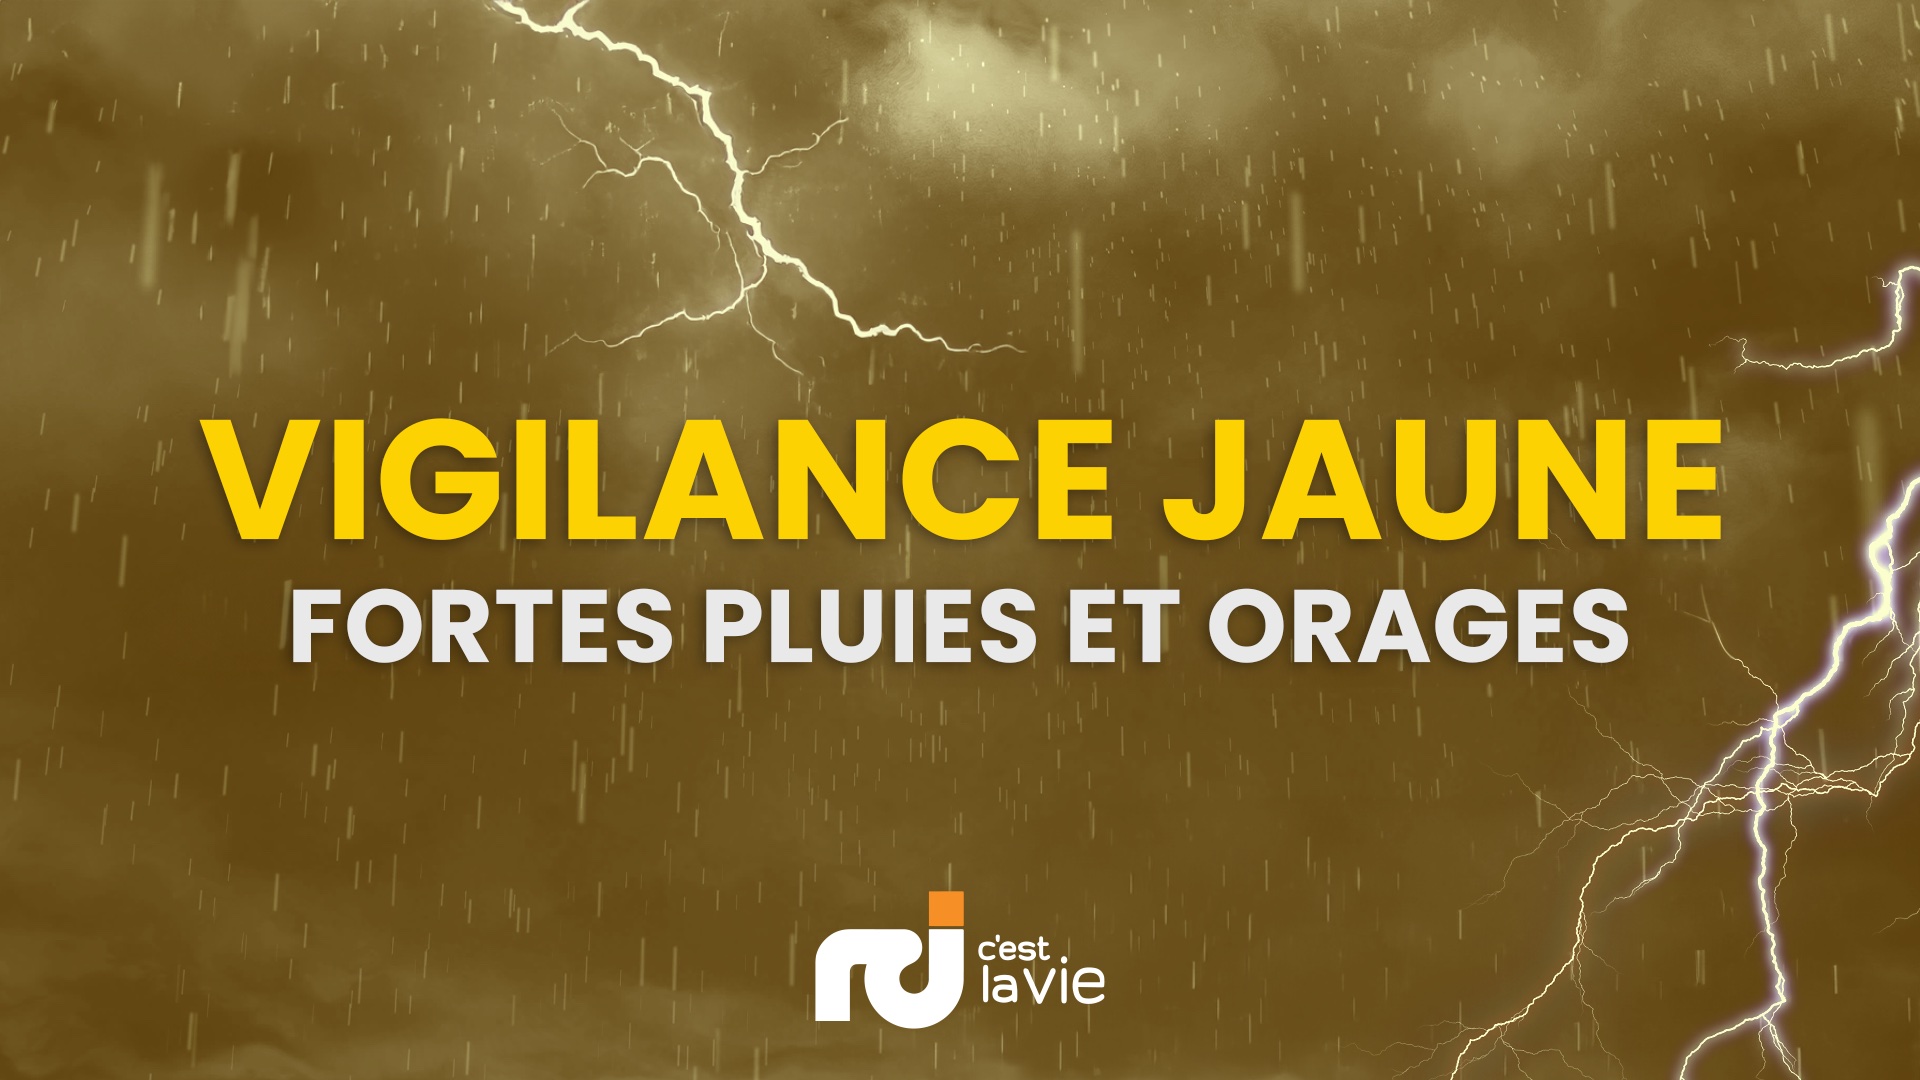     Vigilance jaune : de fortes pluies attendues sur la Guadeloupe ce jeudi matin

